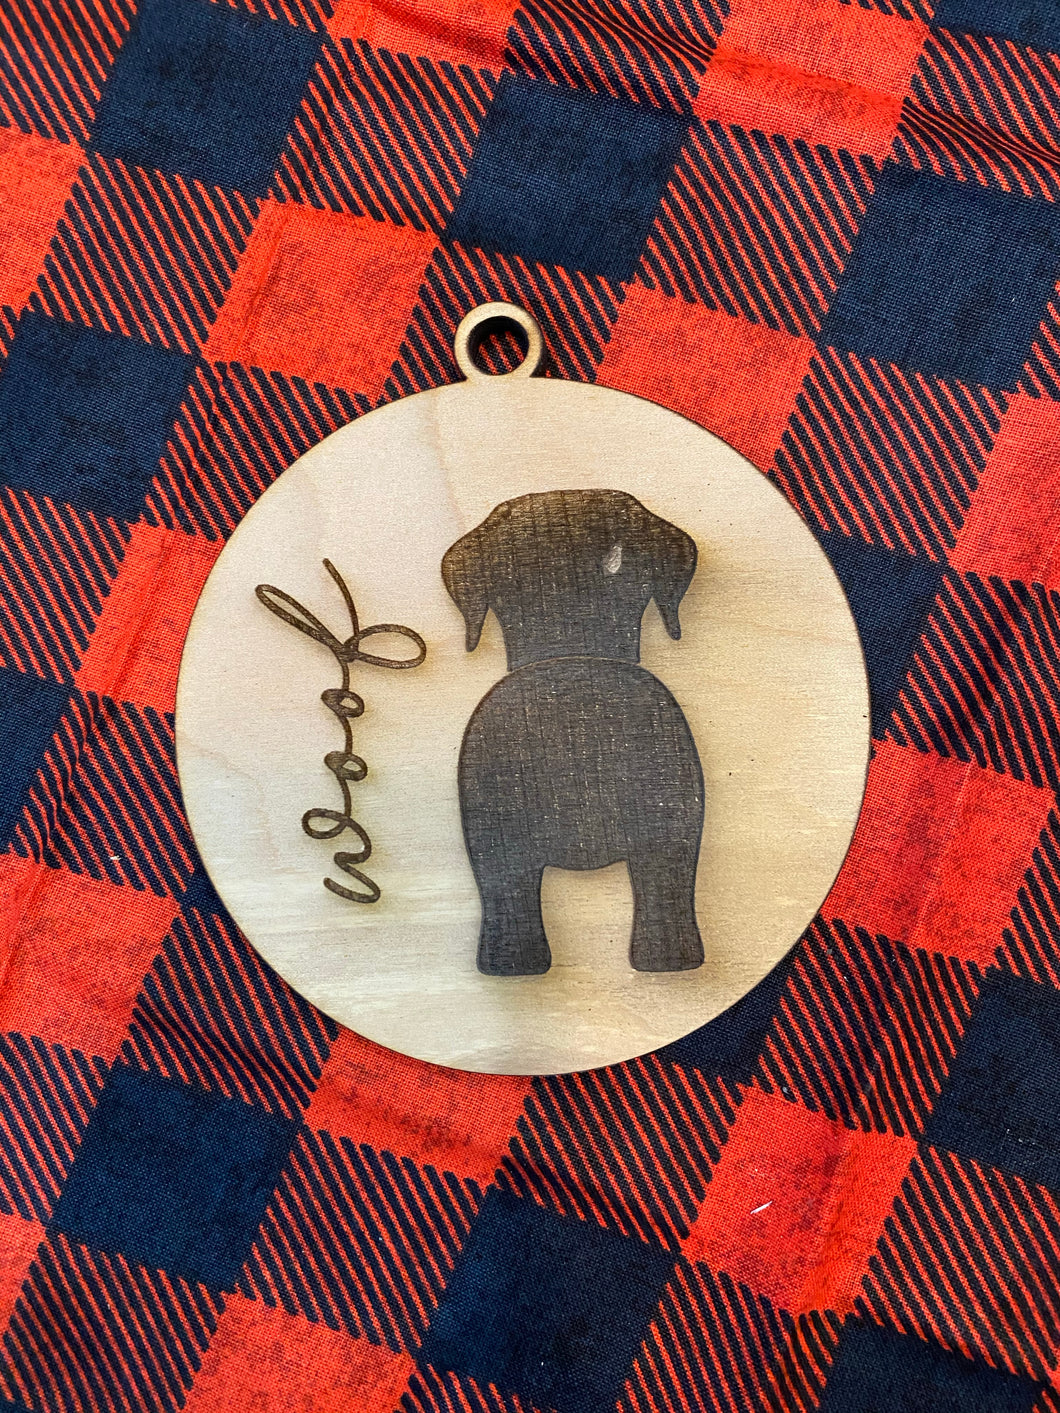 Woof ornament